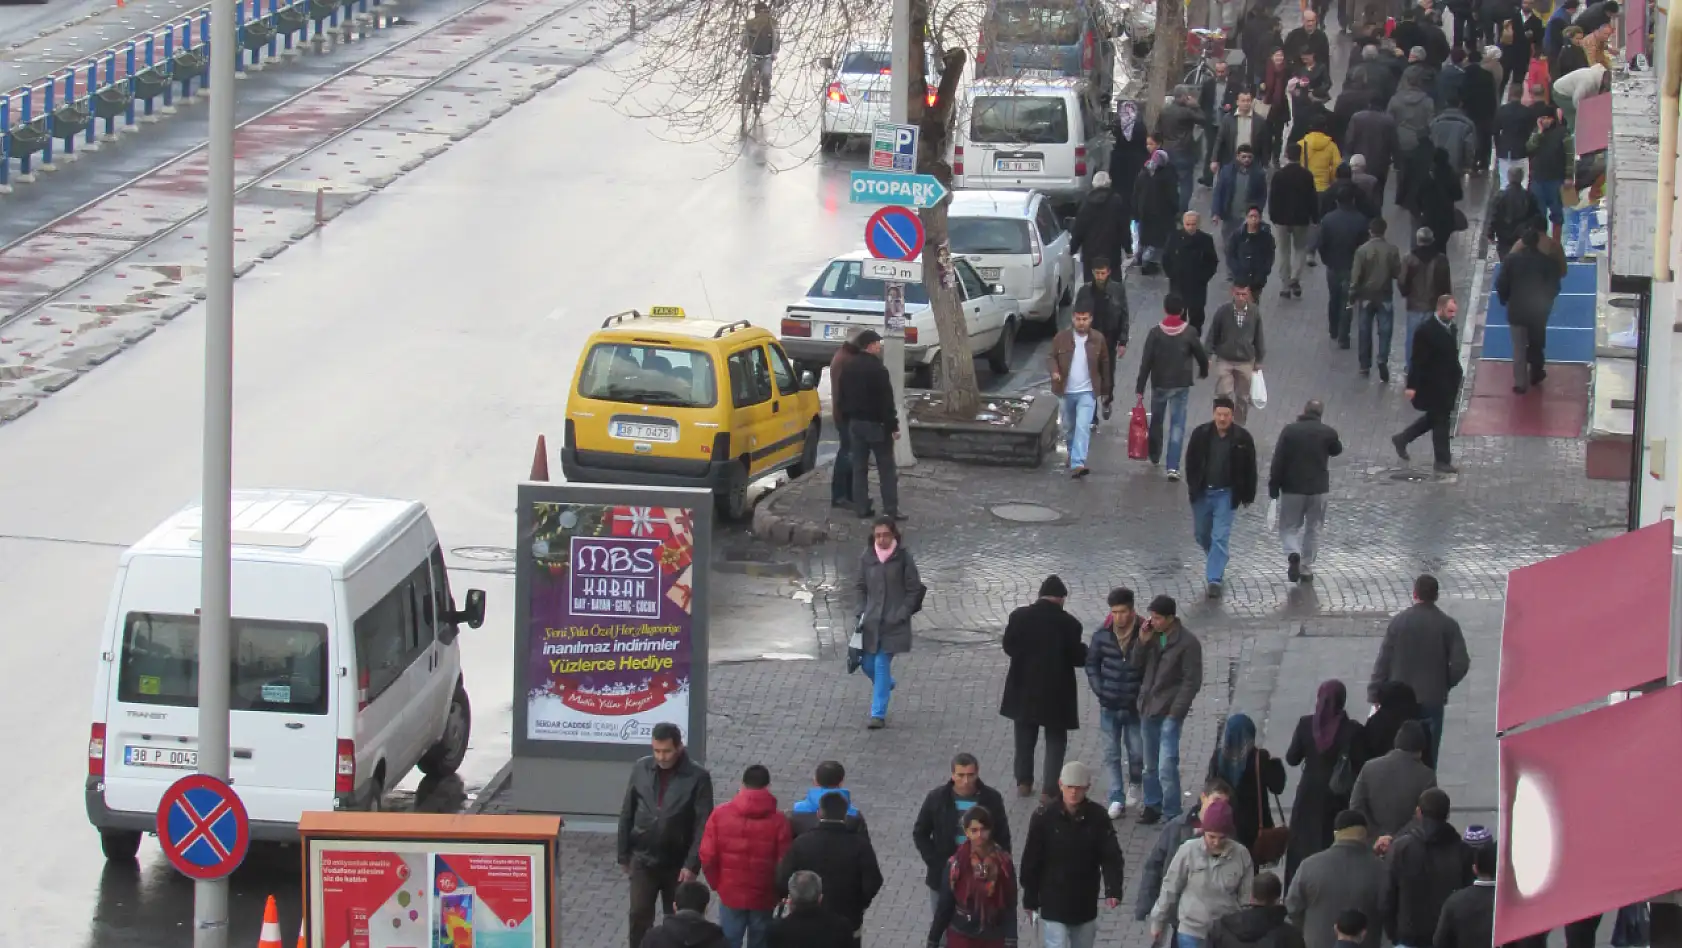 Kayseri'nin ceza tablosu! Son 10 yılda her 100 liralık cezanın sadece 13 lirası tahsil edilebildi